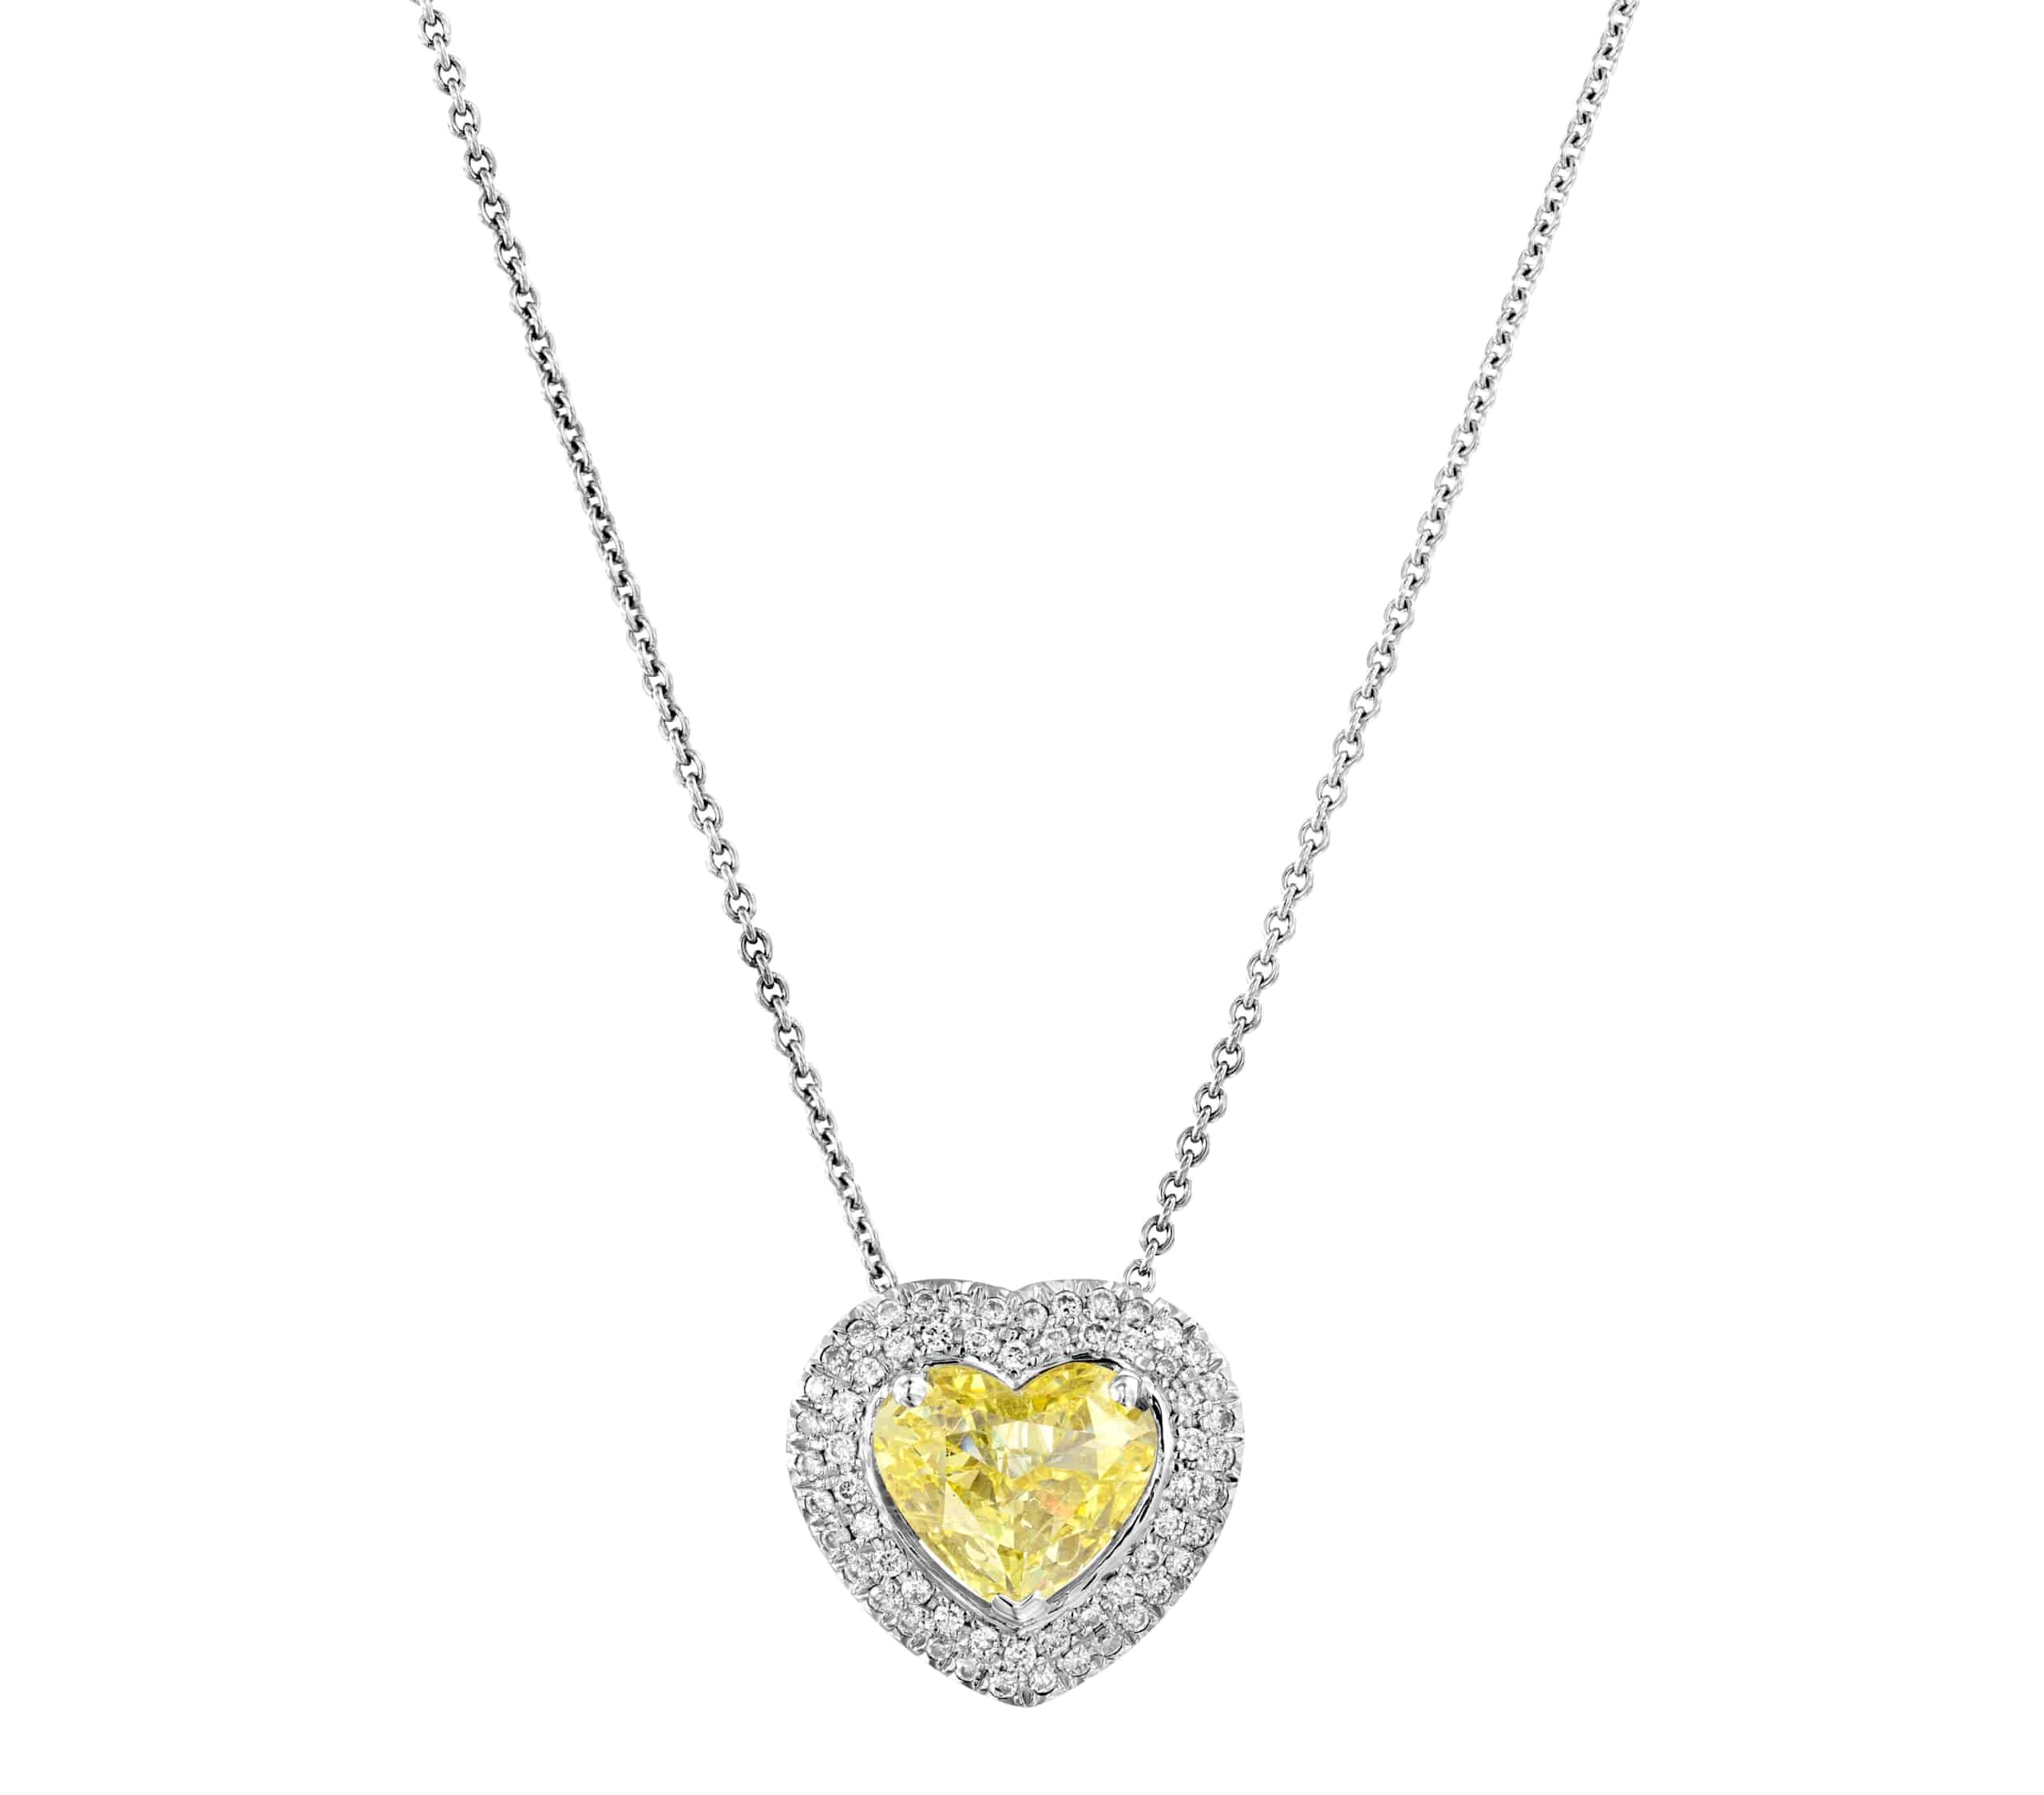 תליון יהלומים בצורת לב קורן דגם סילביה מוקף יהלומים נוצצים, תלוי על שרשרת כסף עדינה.